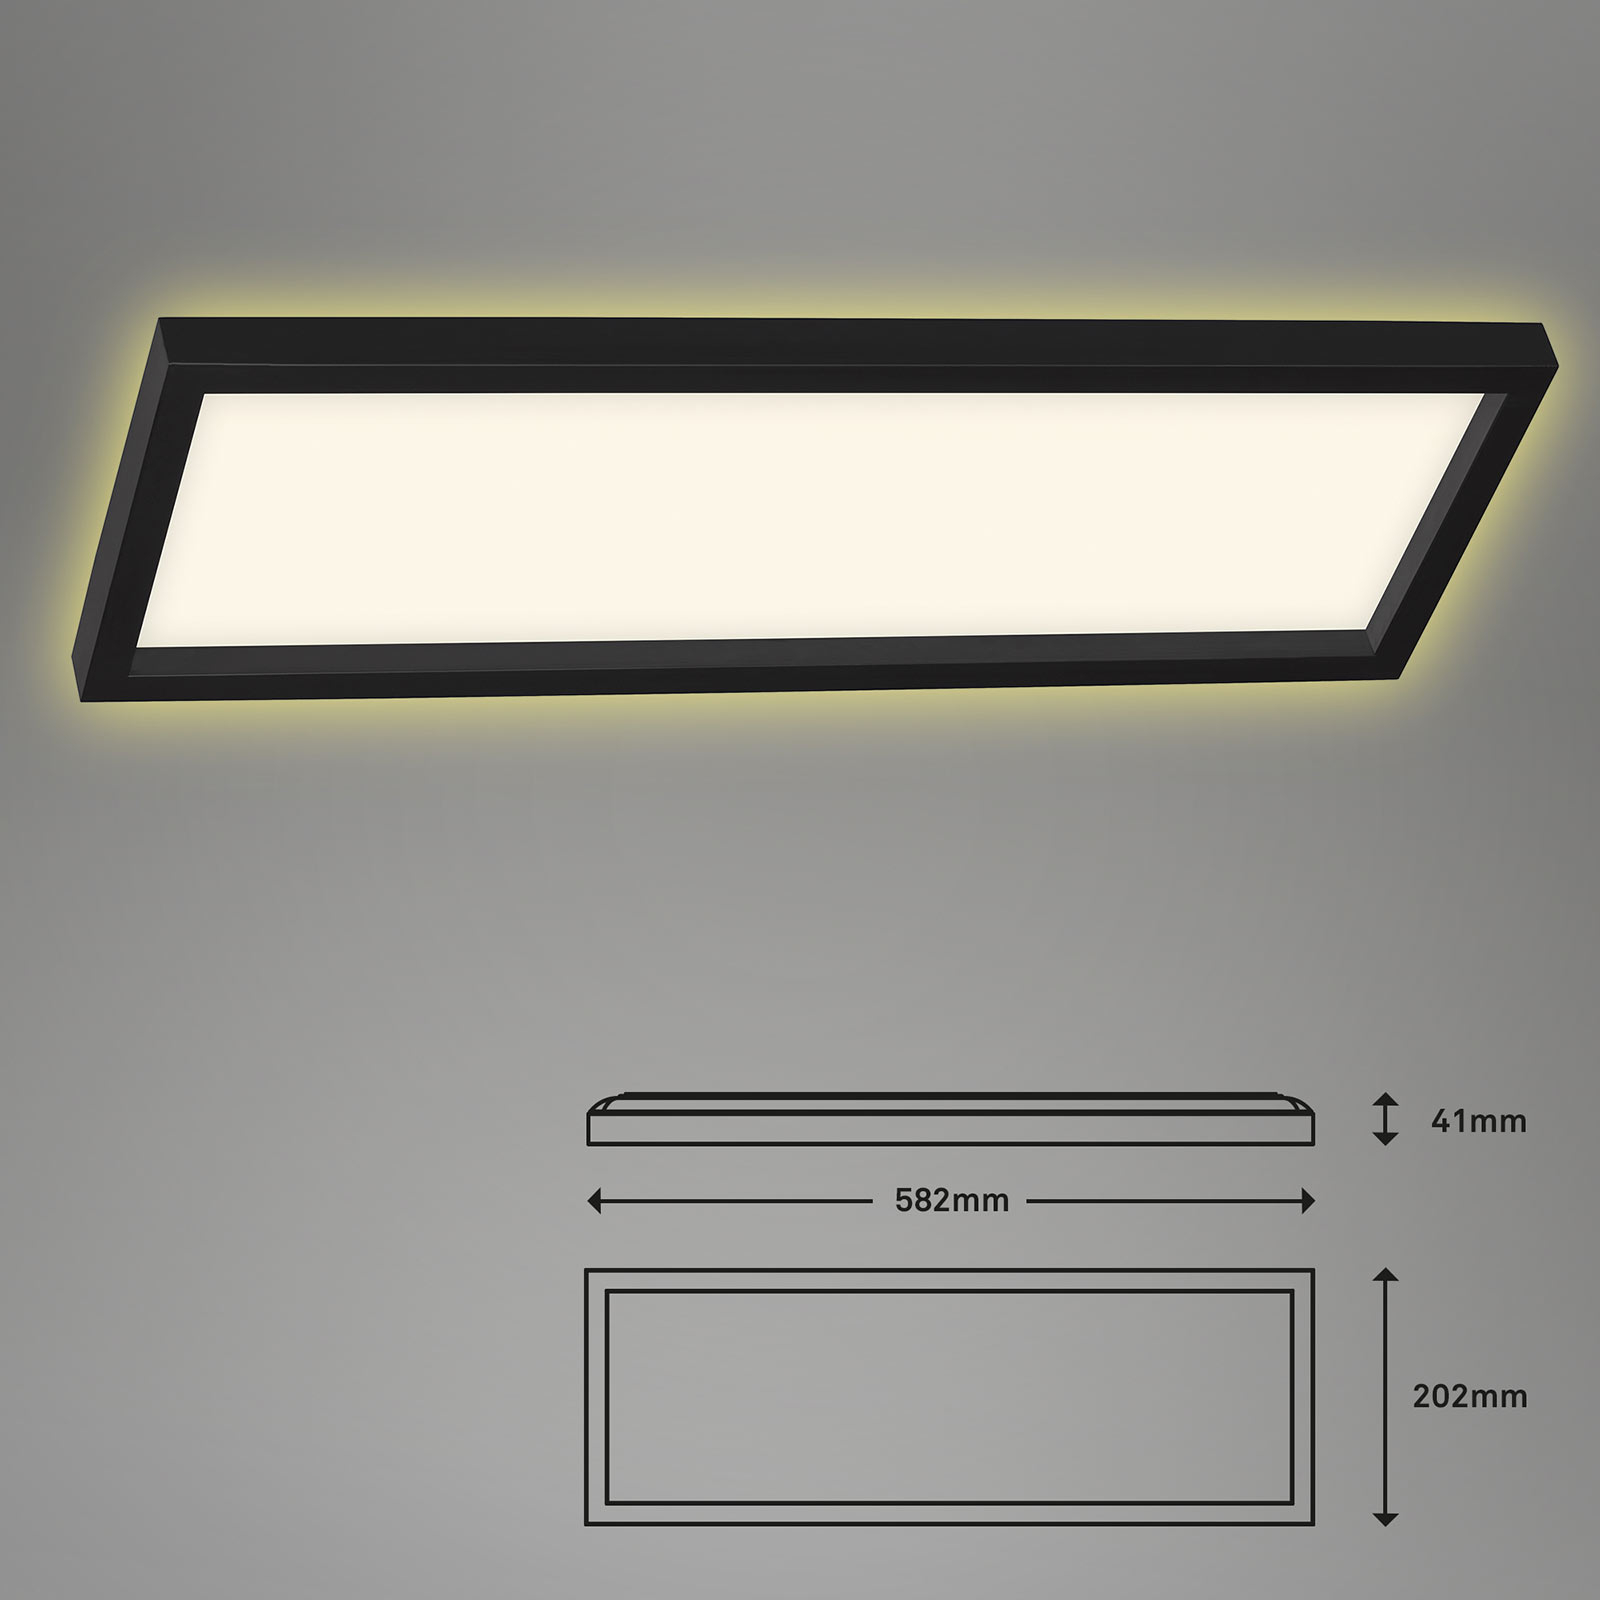 LED-Deckenlampe 7365, 58 x 20 cm, schwarz